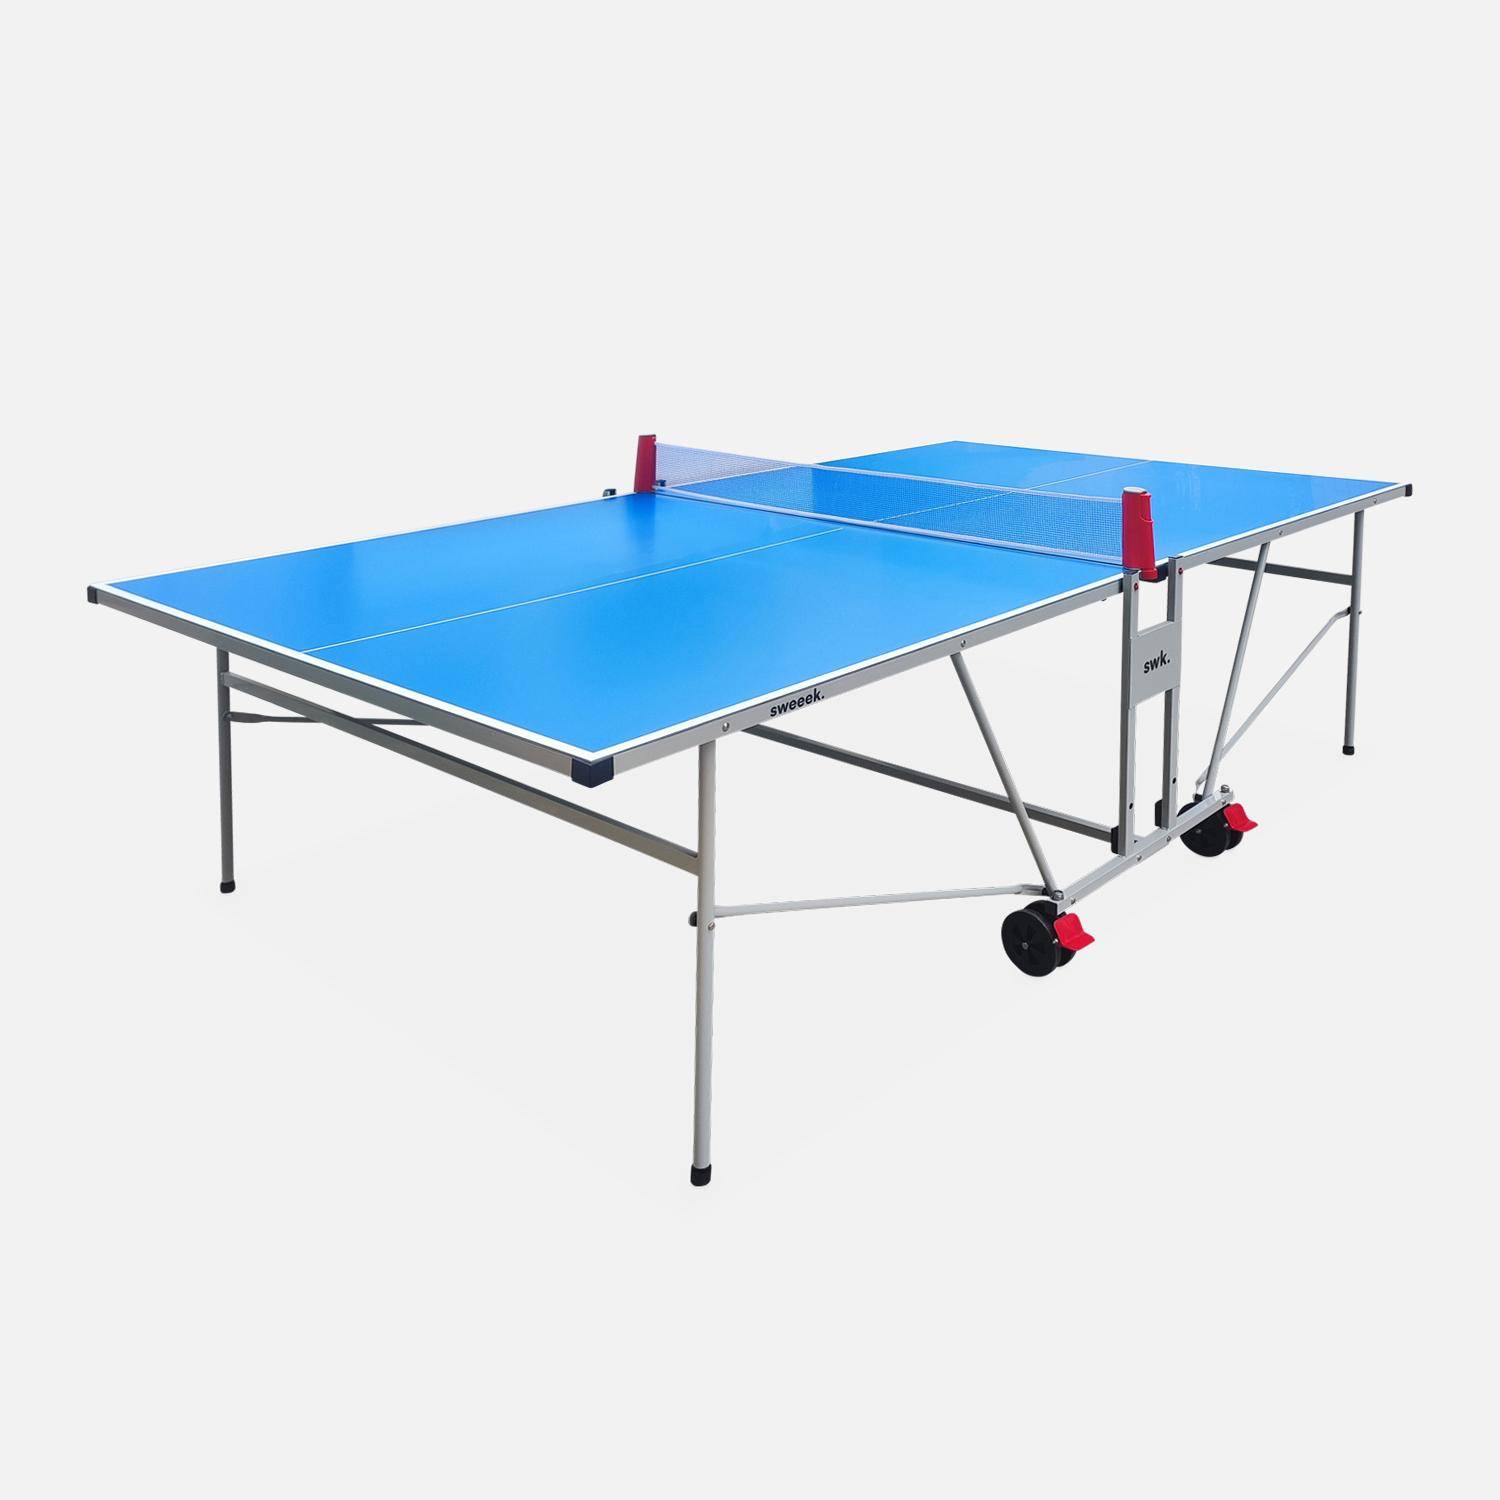 Table de ping pong OUTDOOR bleue, avec 2 raquettes et 3 balles, pour utilisation extérieure, sport tennis de table Photo1